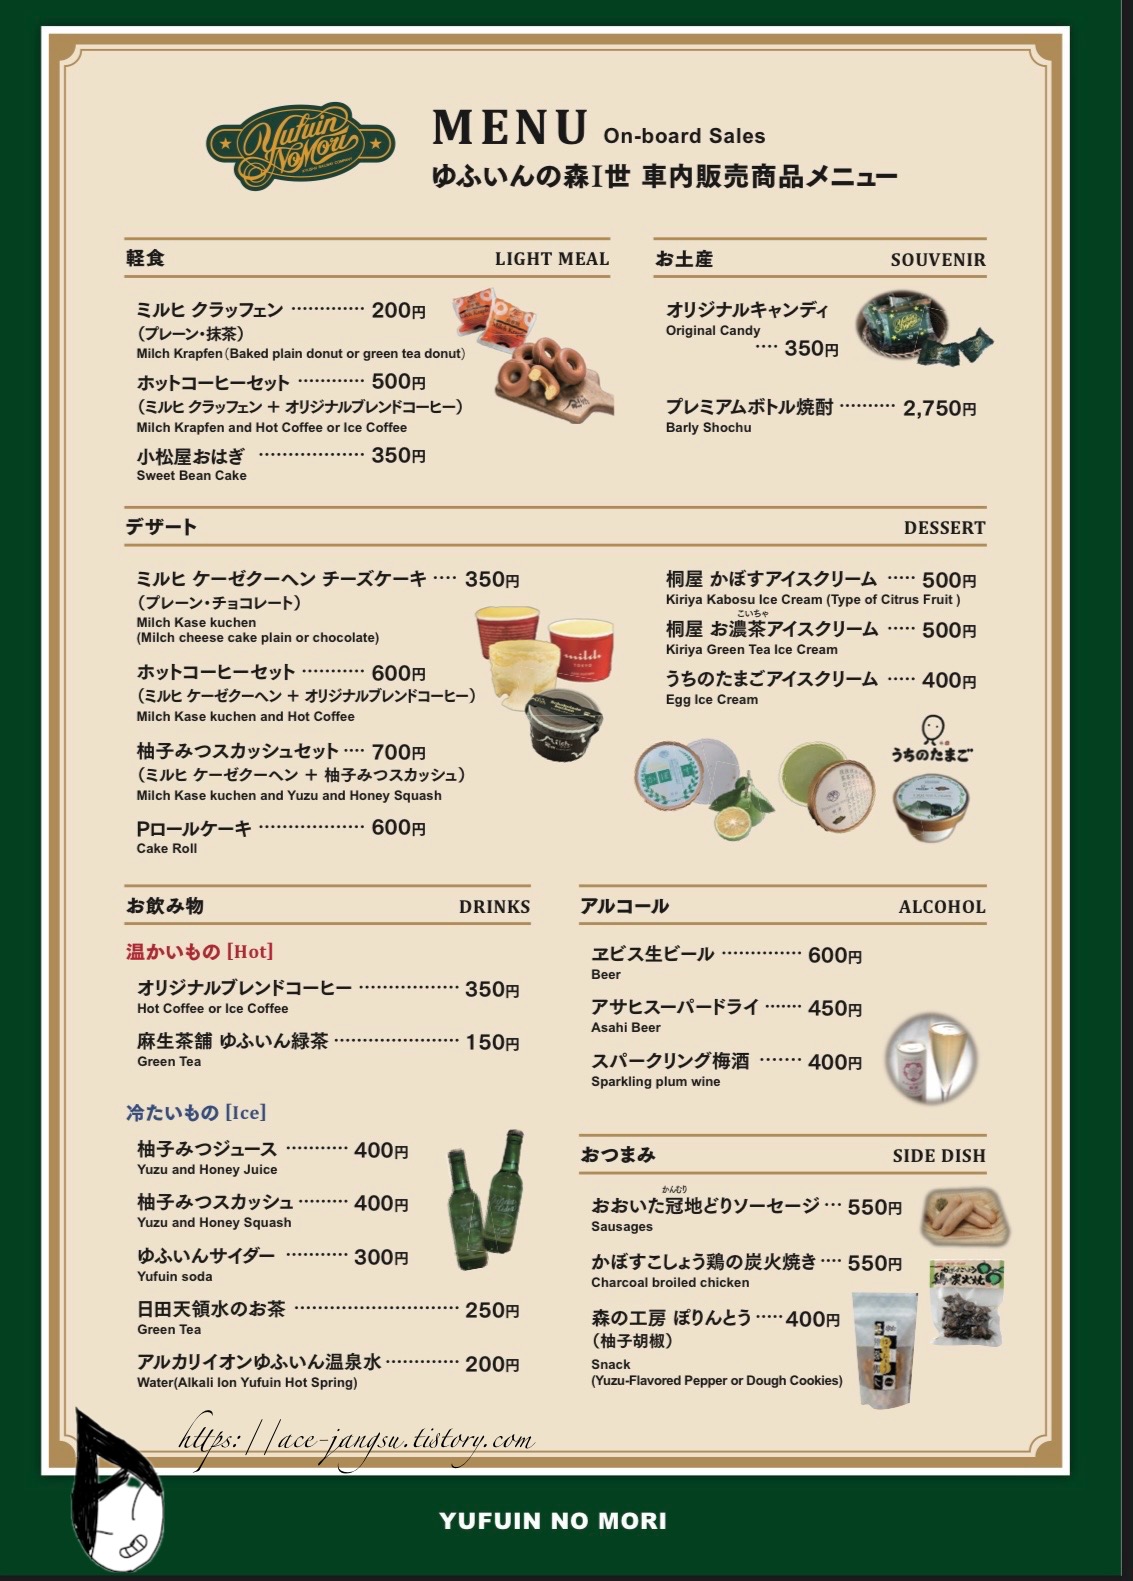 일본어-유후인의숲-유후인노모리-매점-메뉴